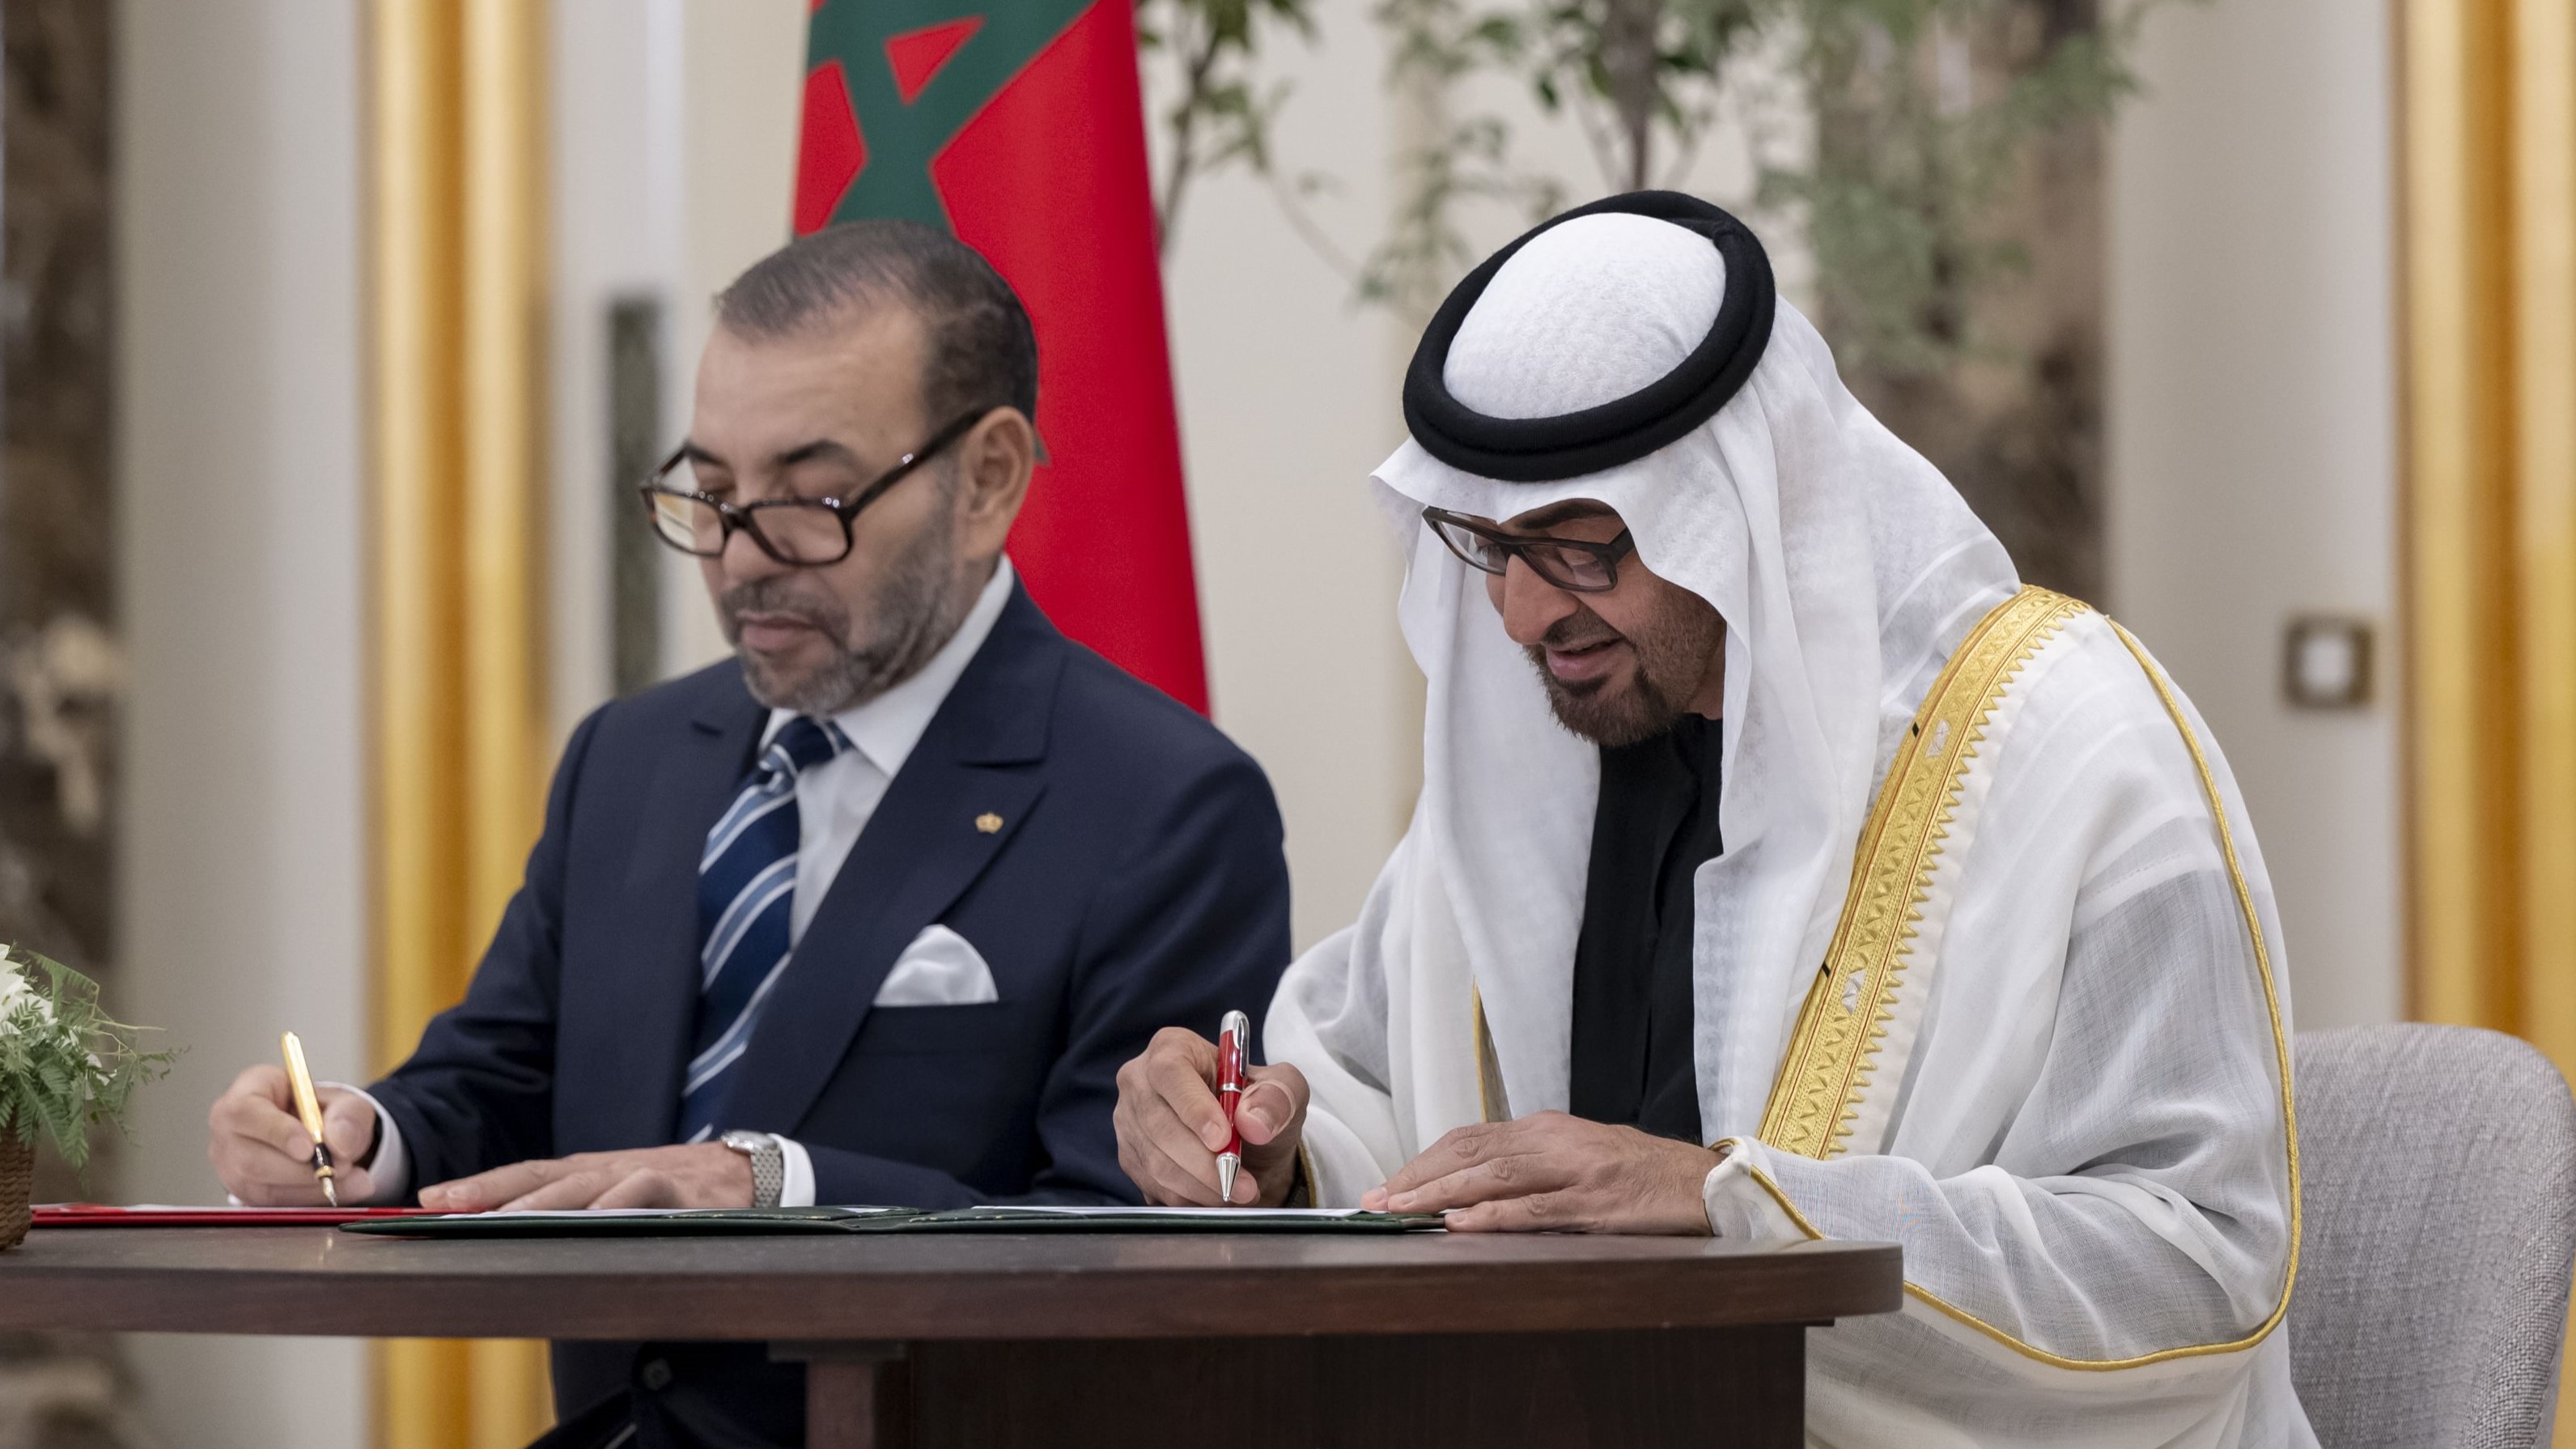 الرئيس الإماراتي الشيخ محمد بن زايد والملك المغربي محمد السادس يوقعان إعلاناً نحو شراكة مبتكرة وراسخة بين بلديهما الإثنين 4 ديسمبر في قصر الوطن بأبوظبي